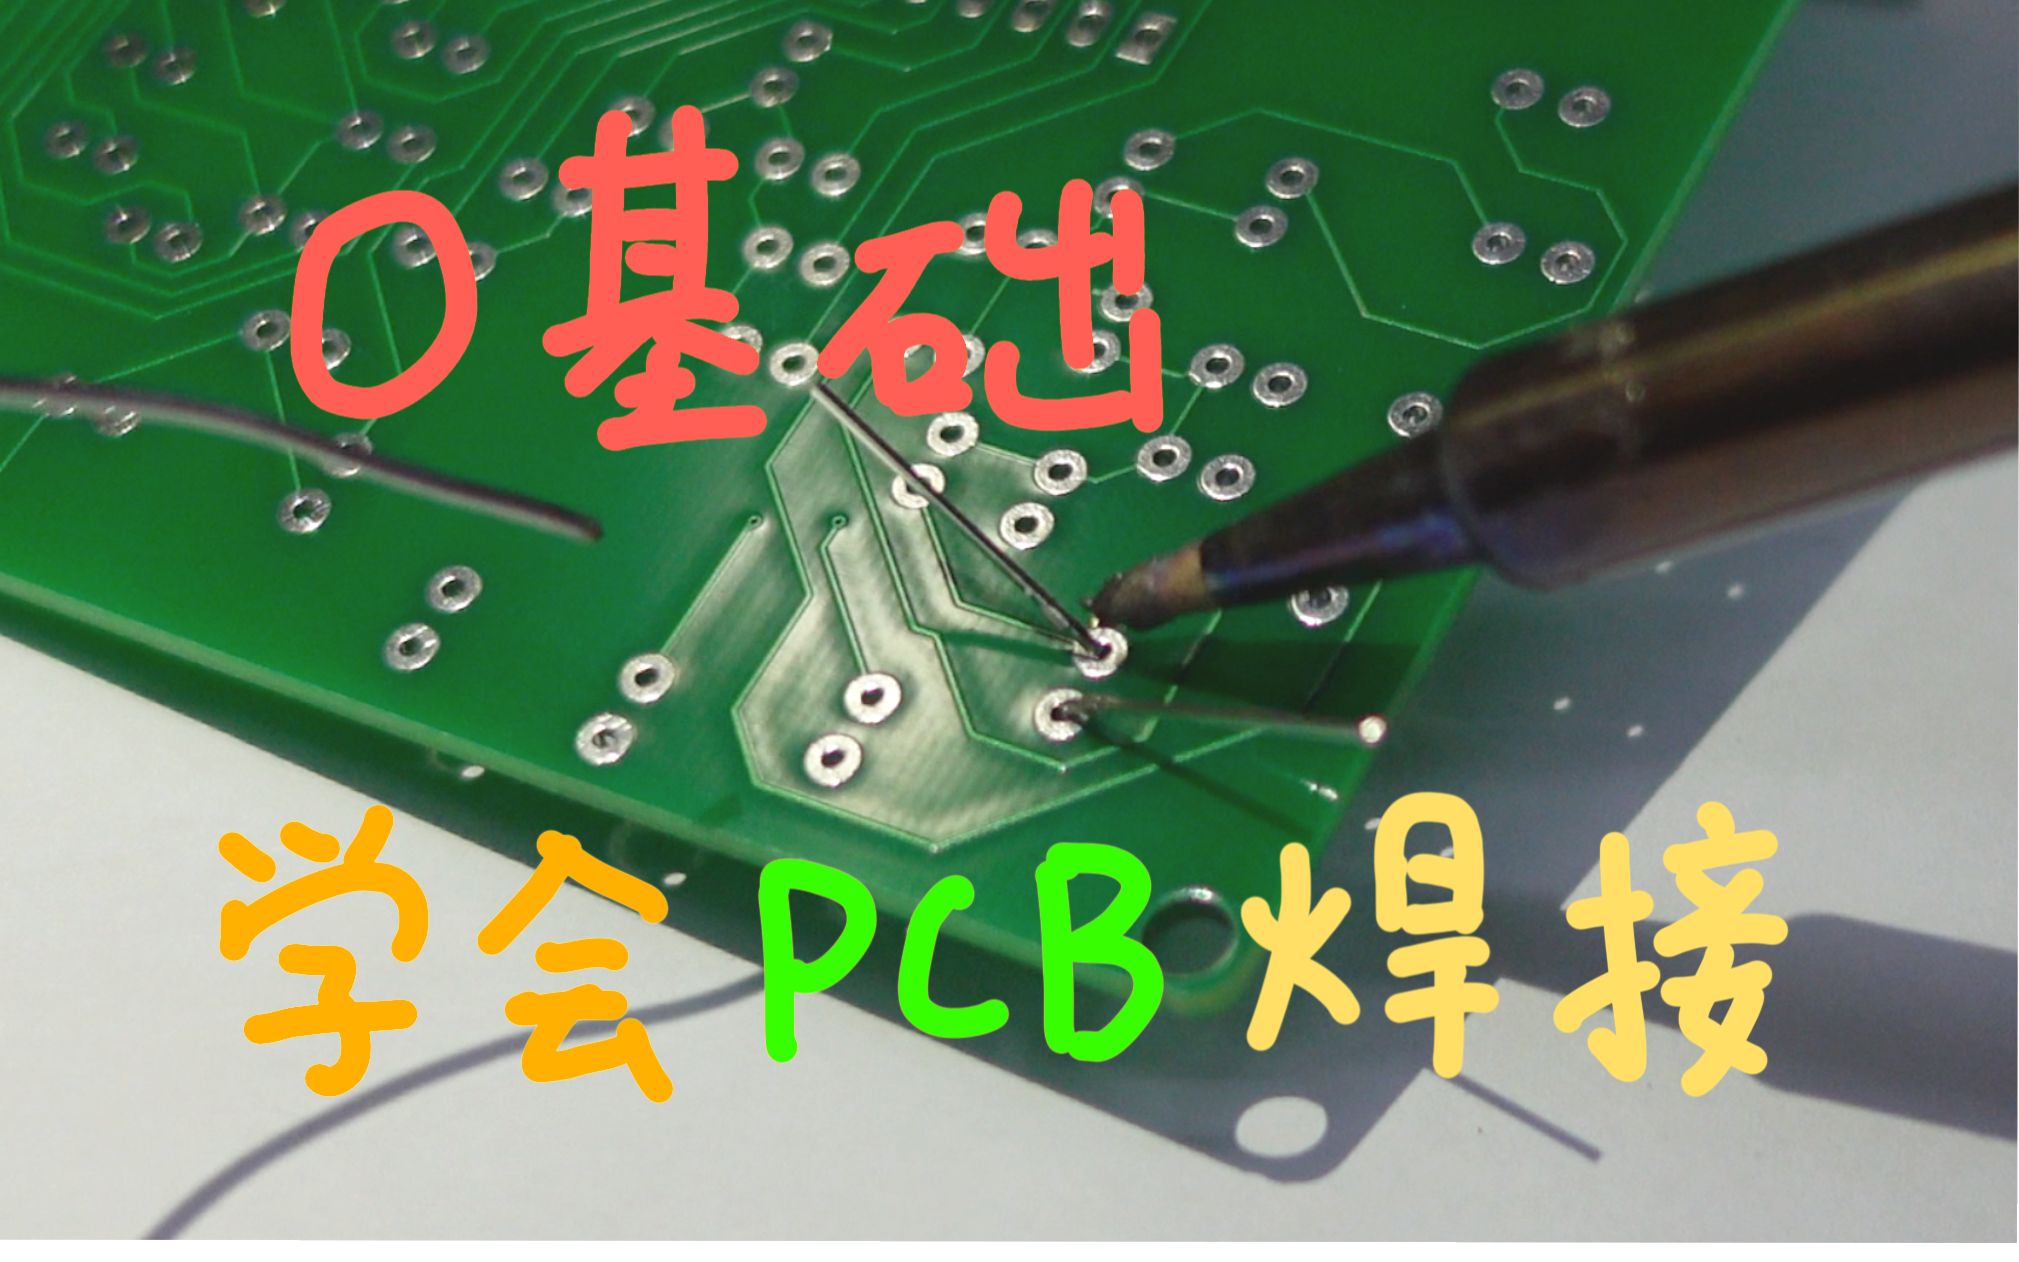 ｛宇｝从0开始学会PCB焊接 无基础纯新手向     宇的课#4